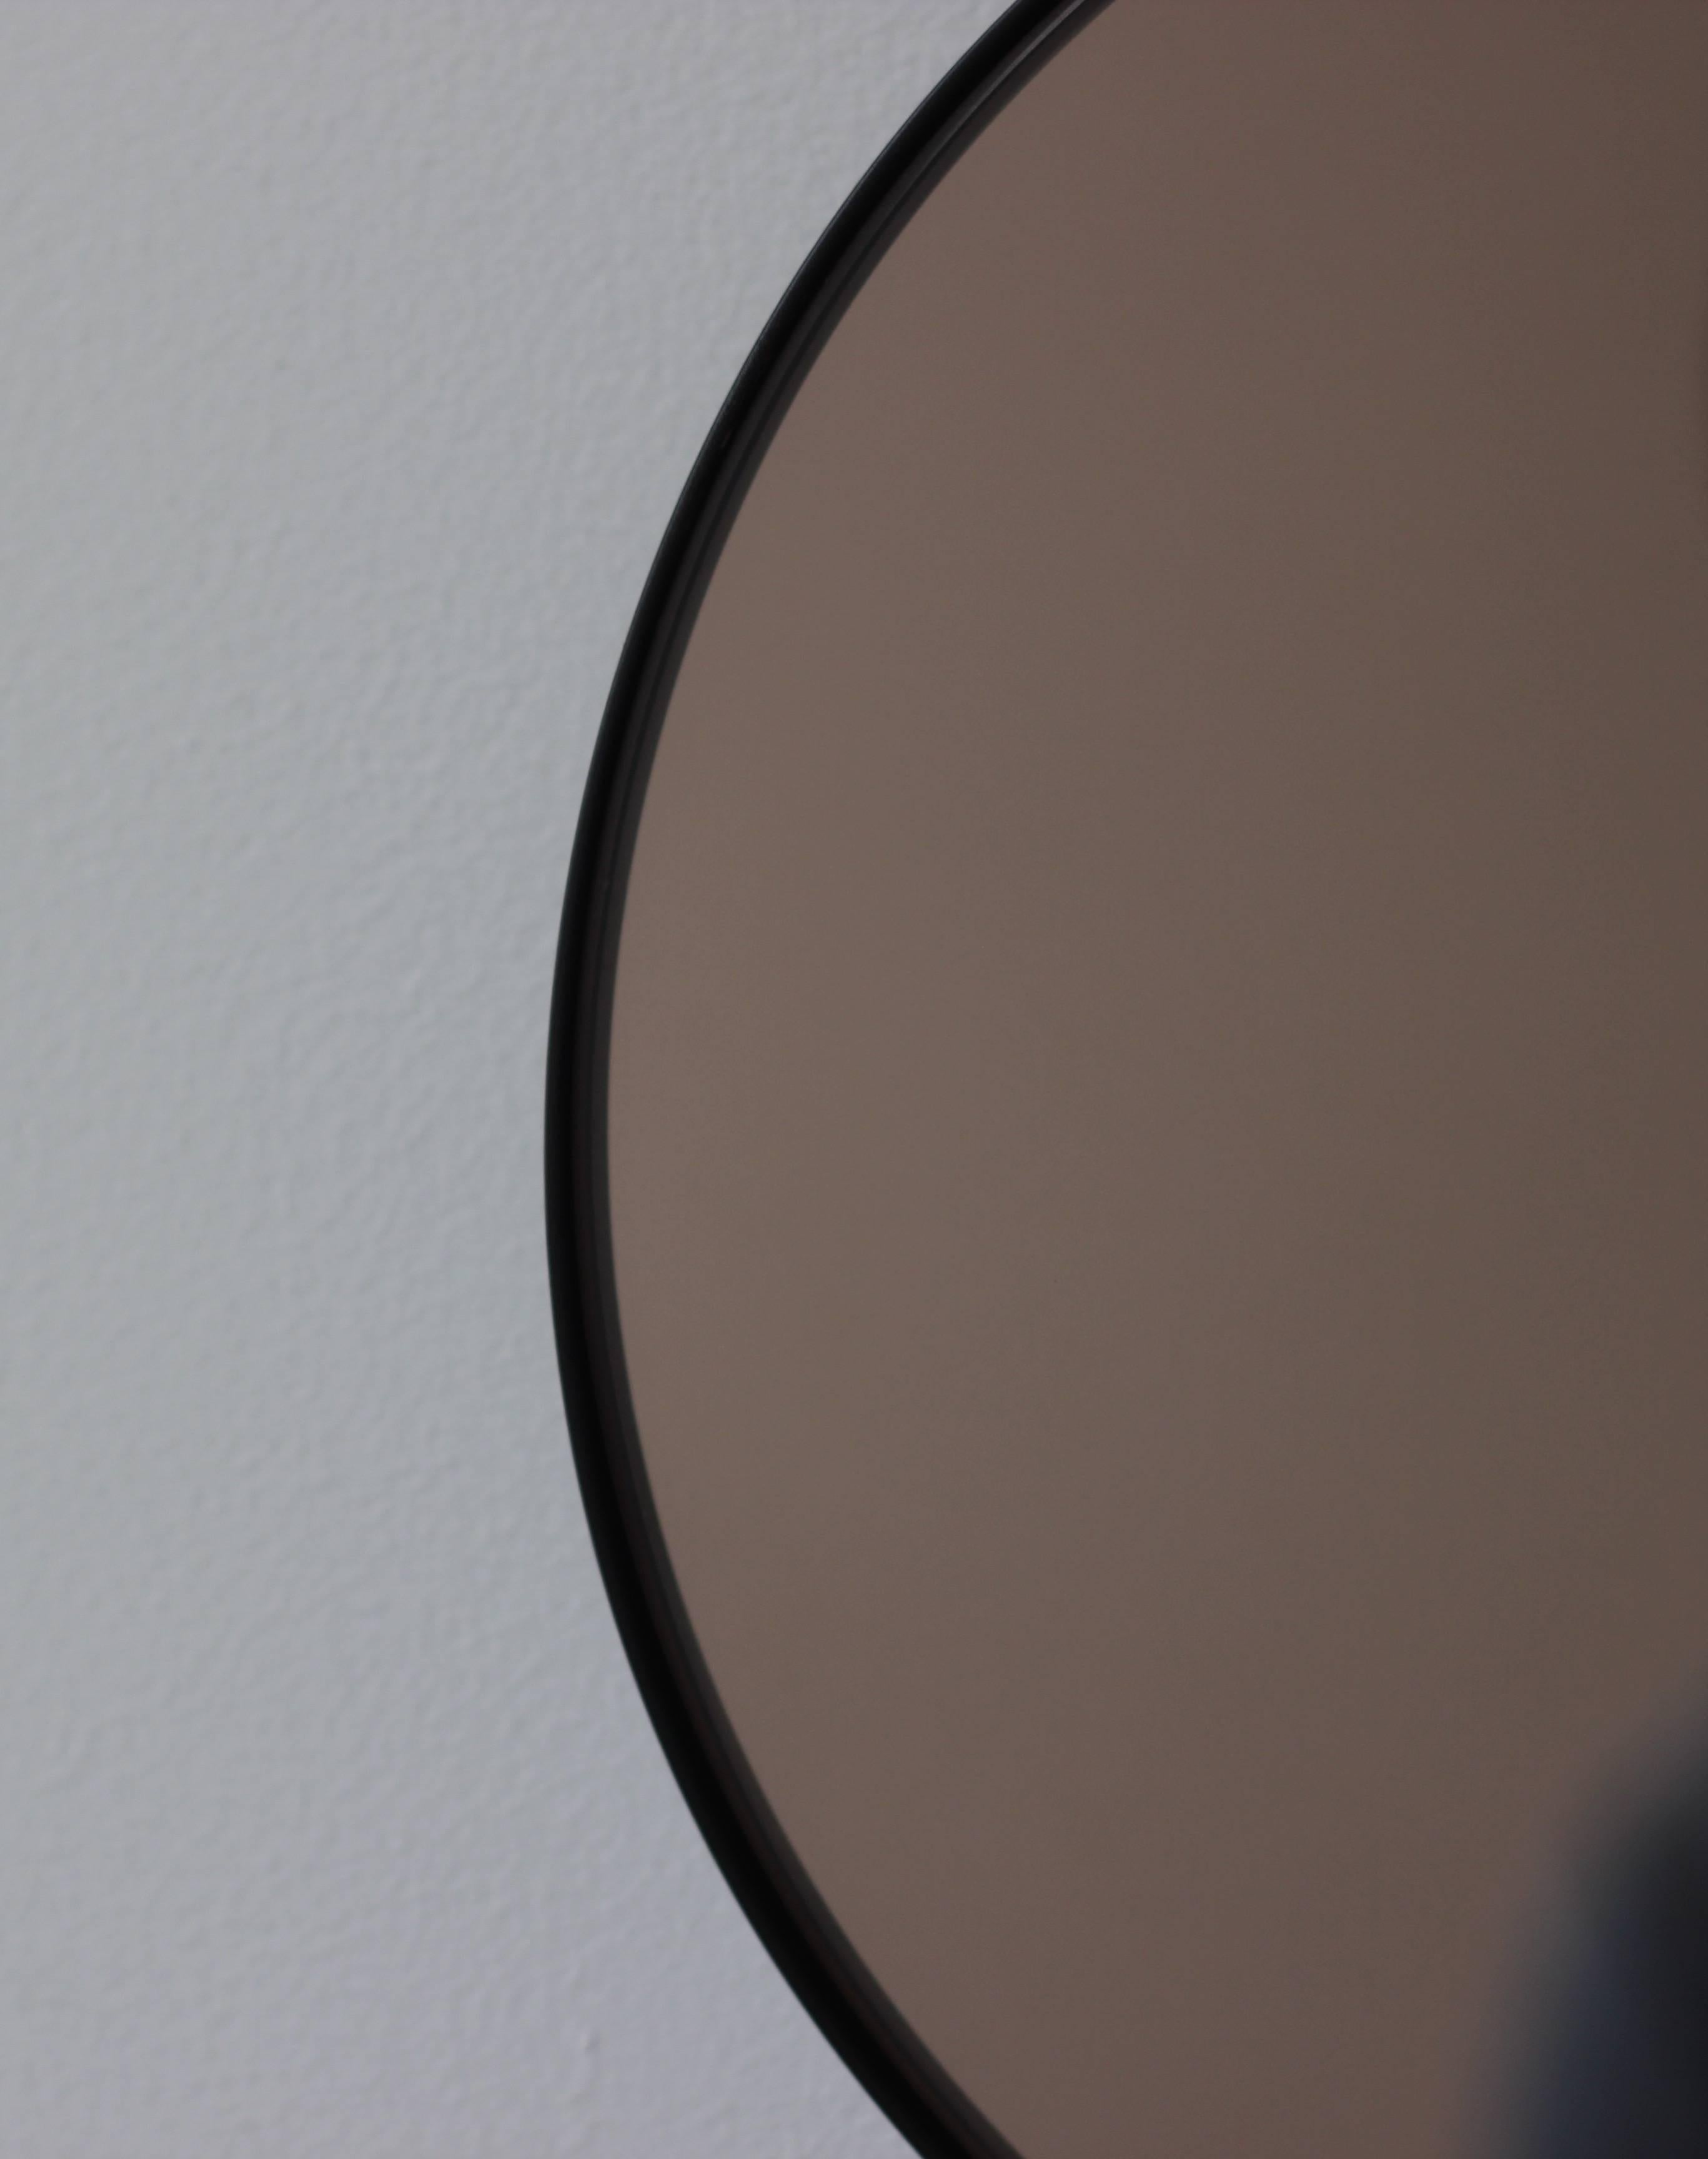 Miroir rond teinté bronze Orbis™ contemporain avec un cadre minimaliste en aluminium peint par poudrage en noir. Conçu et fabriqué à la main à Londres, au Royaume-Uni.

Les miroirs de taille moyenne, grande et extra-large (60, 80 et 100 cm) sont